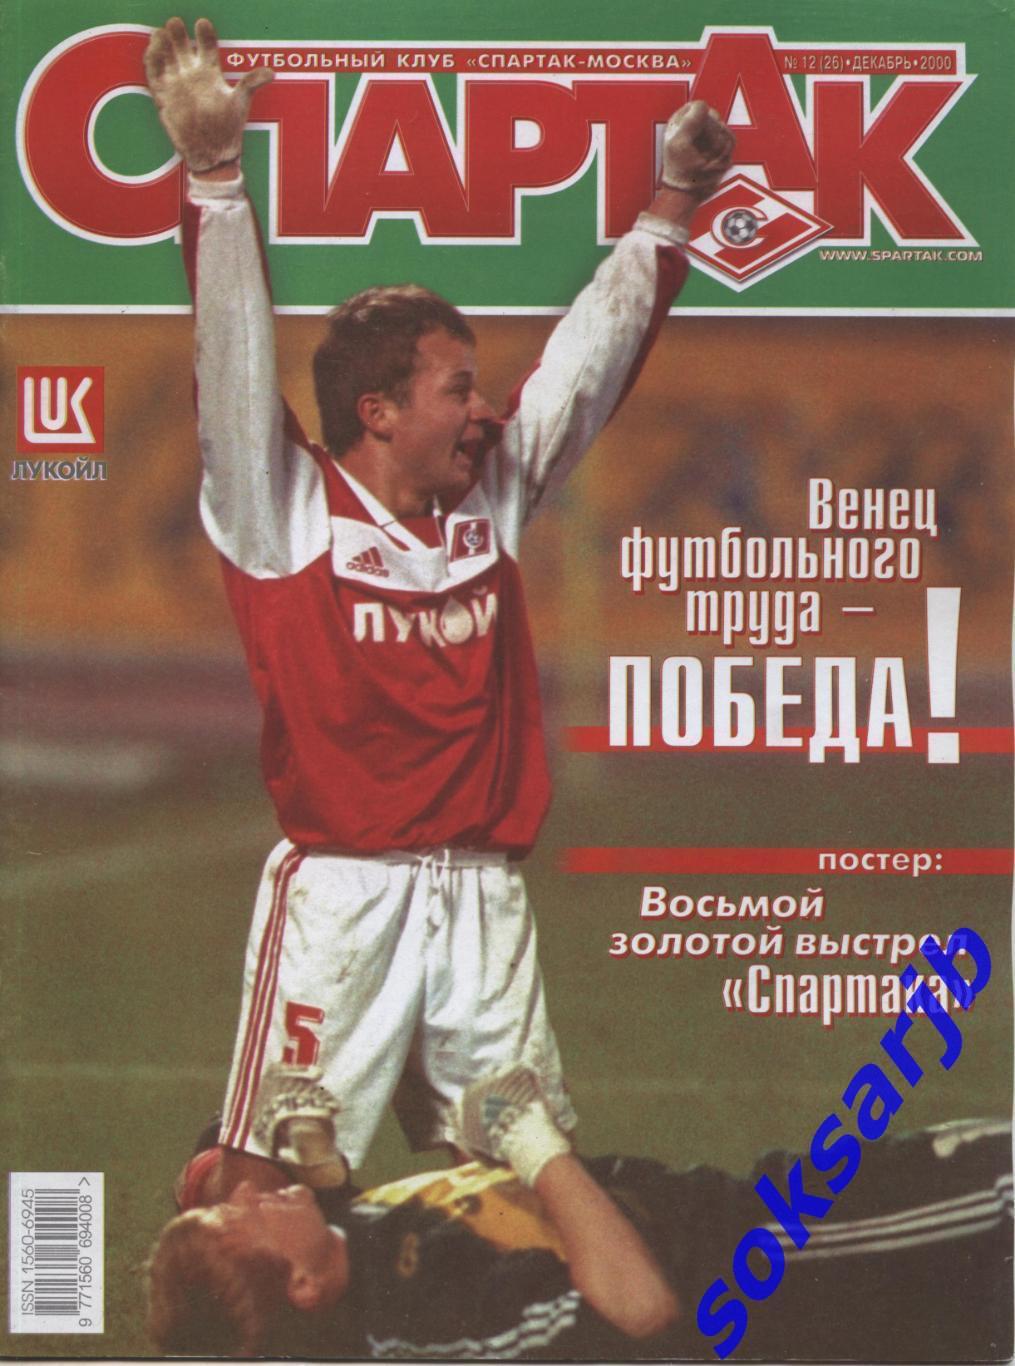 2000. Журнал СПАРТАК Москва. №12. (26).